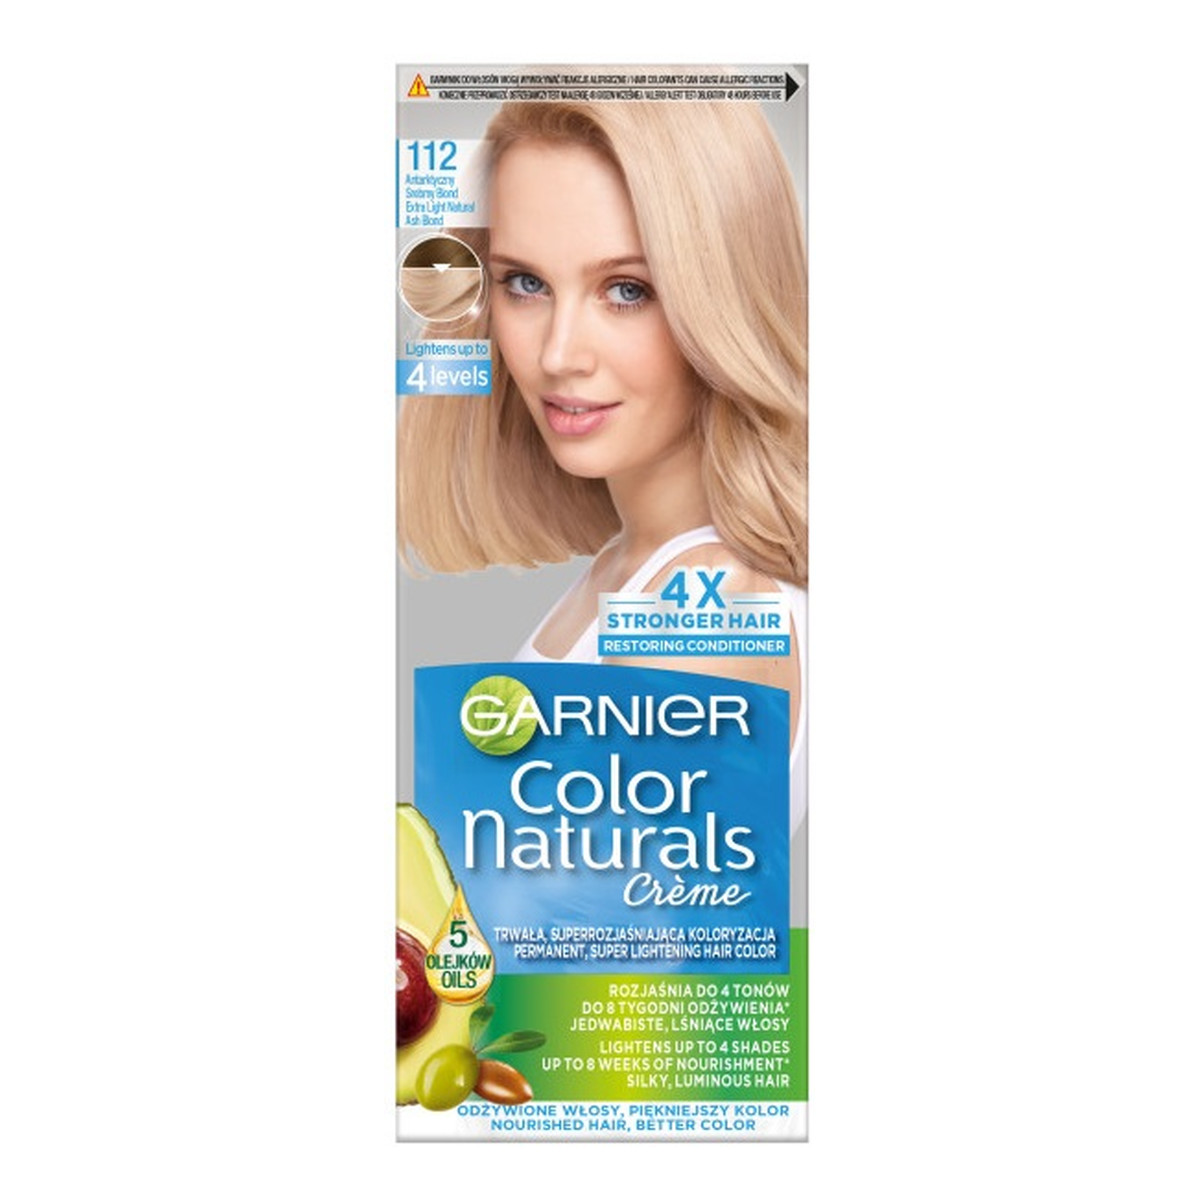 Garnier Color Naturals Creme Krem koloryzujący do włosów 112 arktyczny srebrny blond